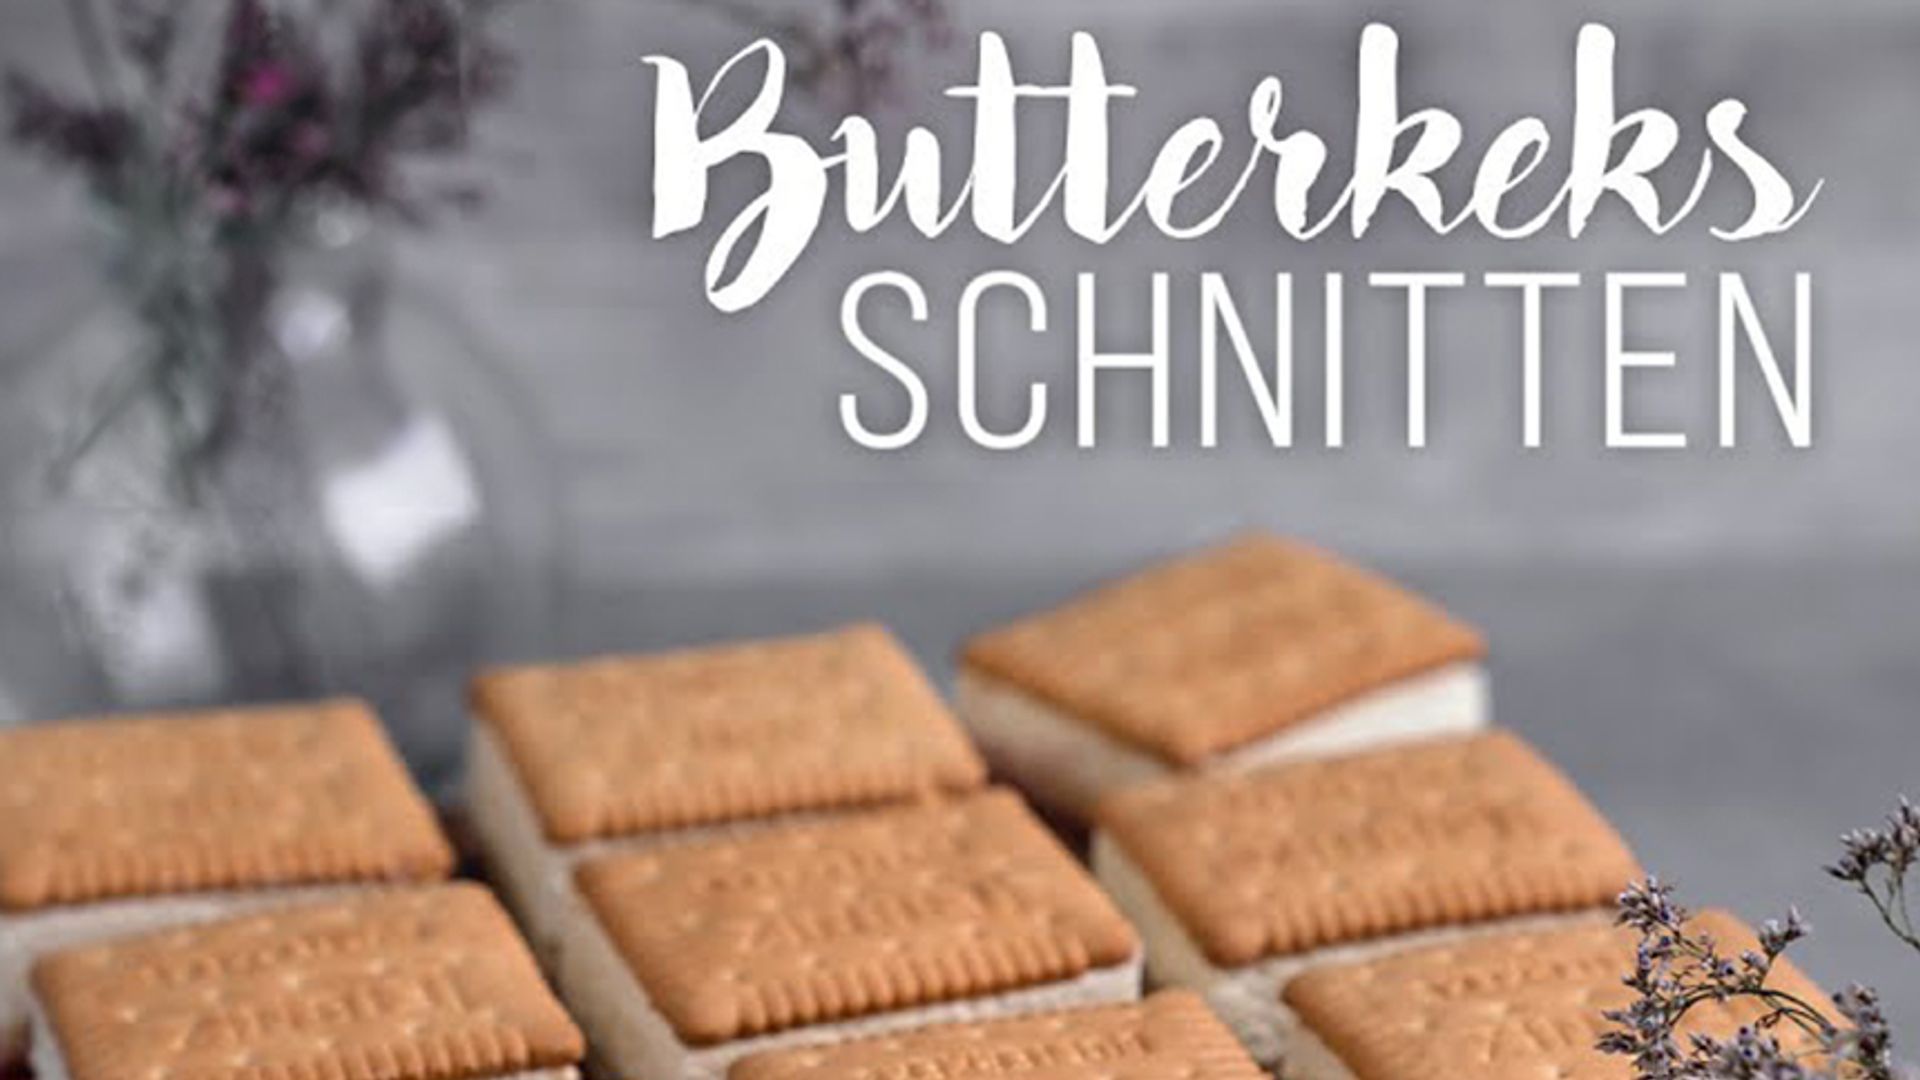 Butterkeks-Schnitte mit Vanillepudding, Fruchtschicht und Sahne / Sallys Welt